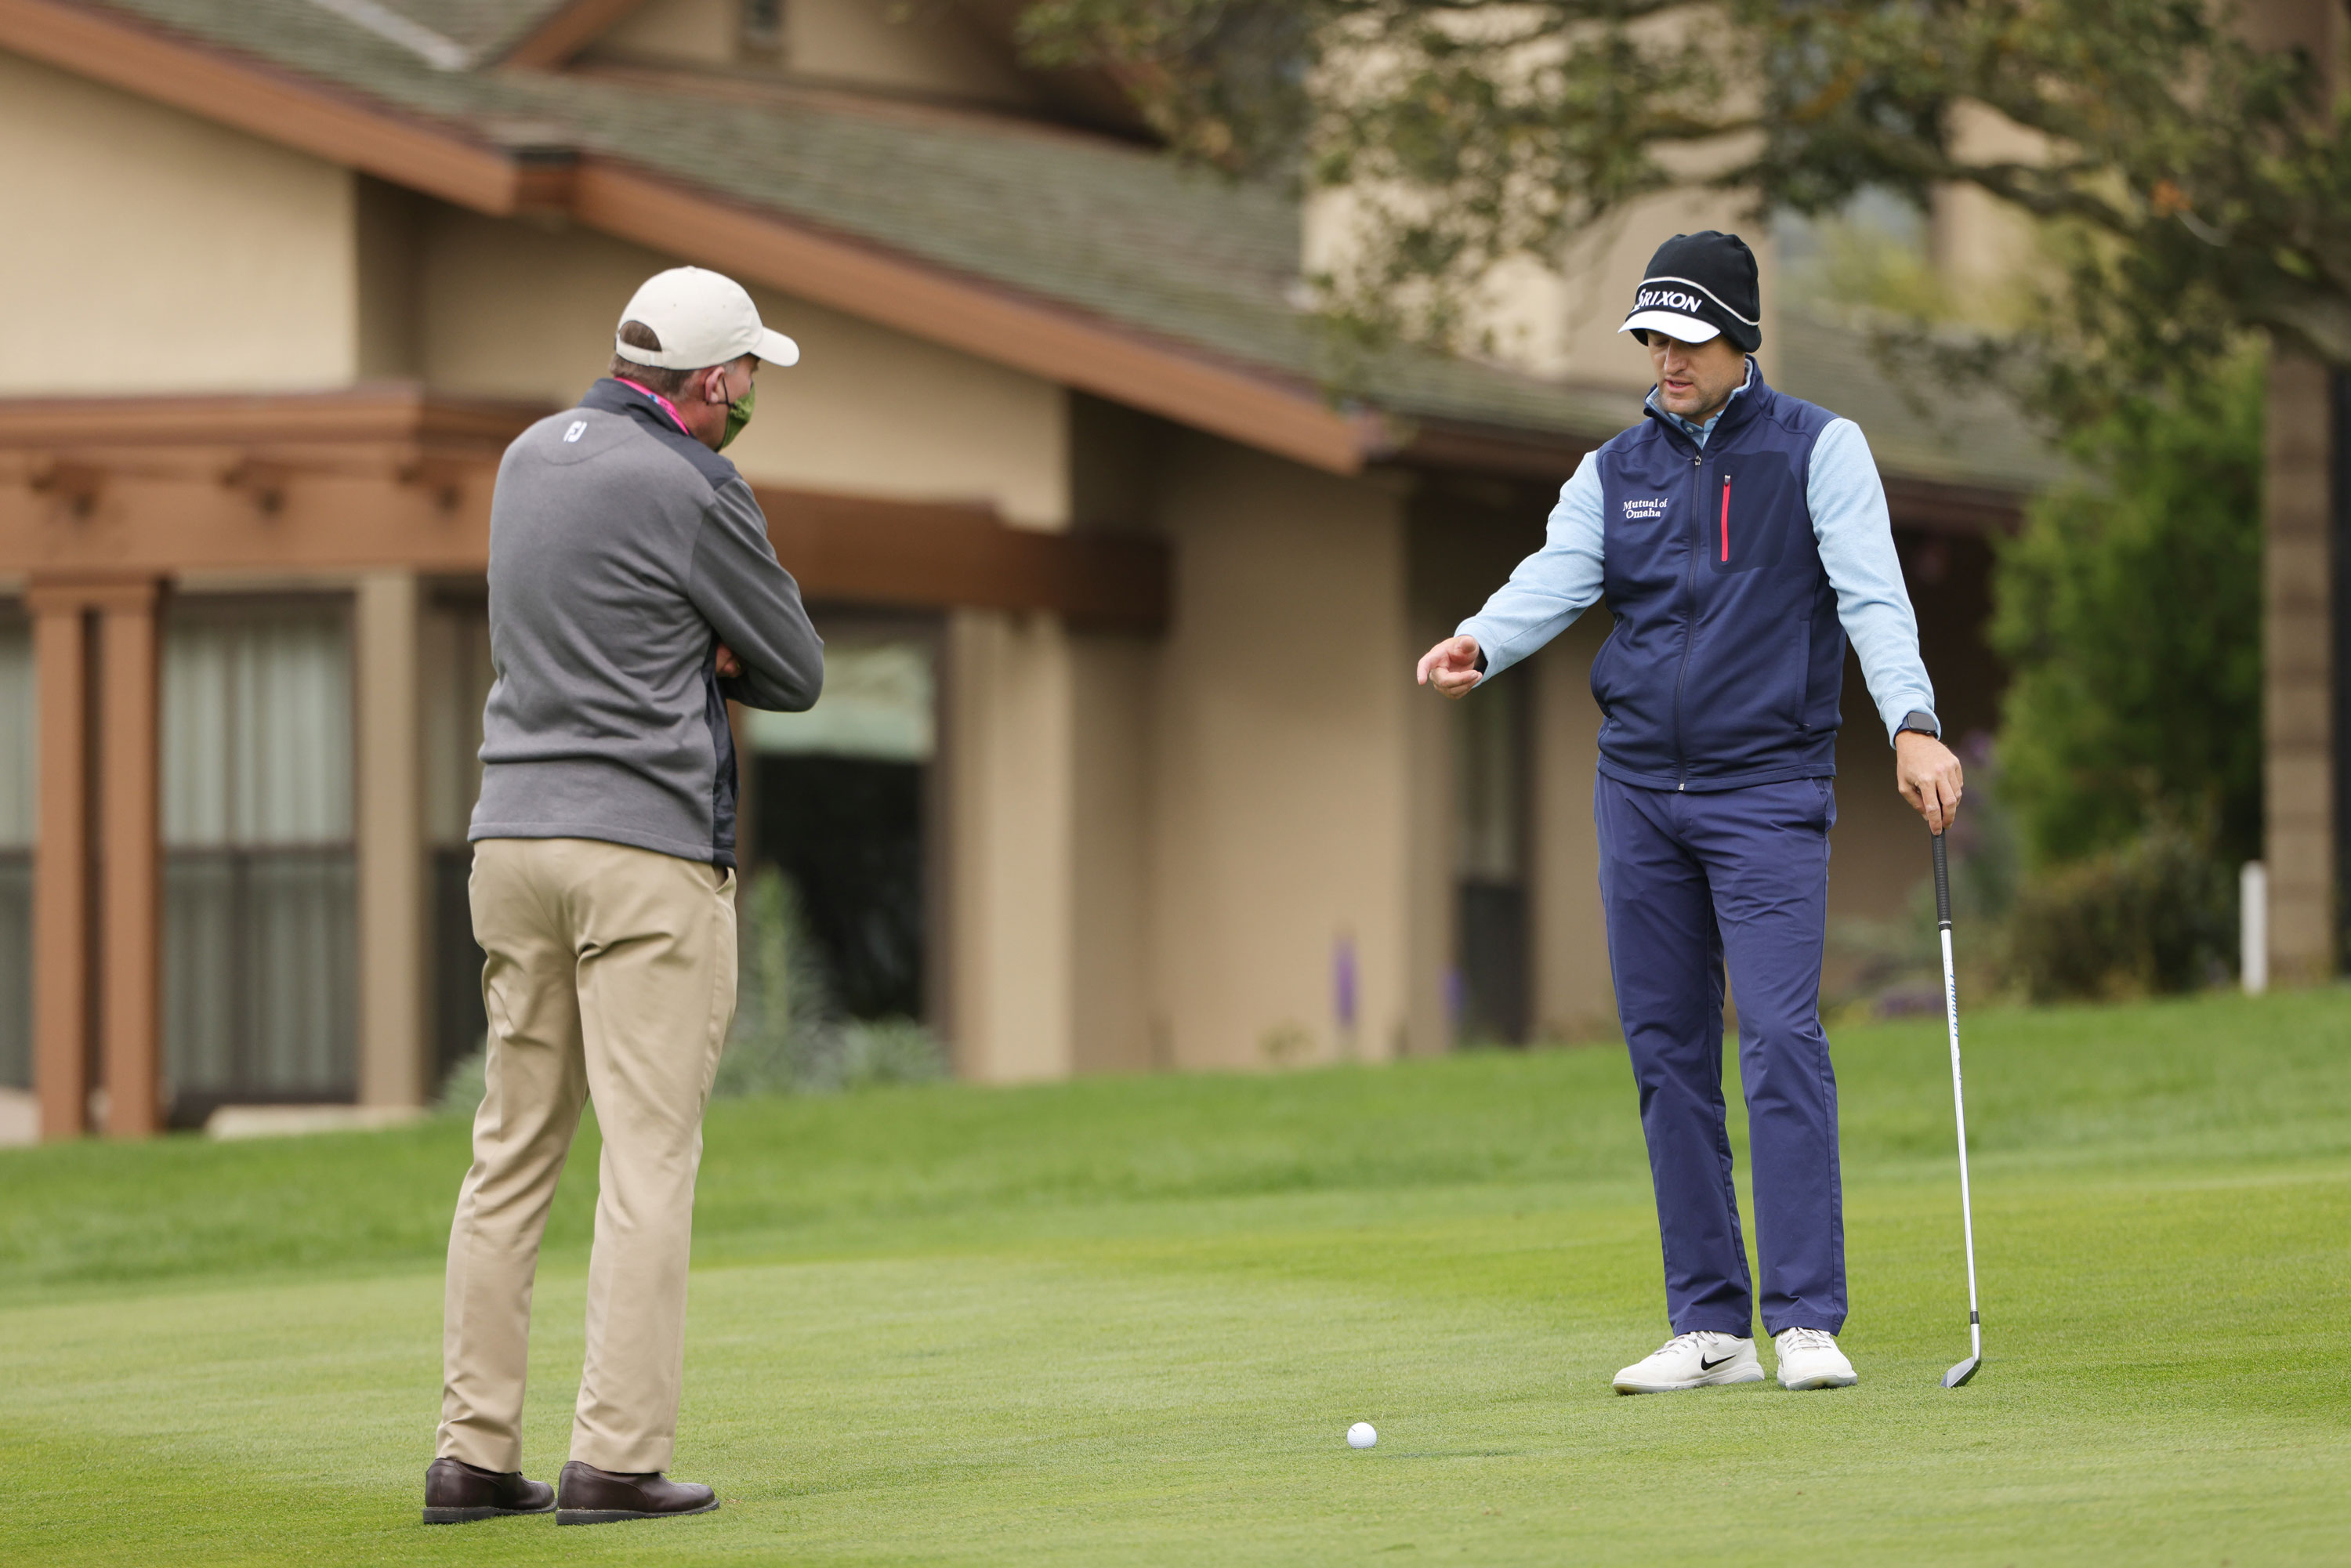 Luật golf tai hại khiến Russell Knox hụt cơ hội vô địch AT&T Pebble Beach